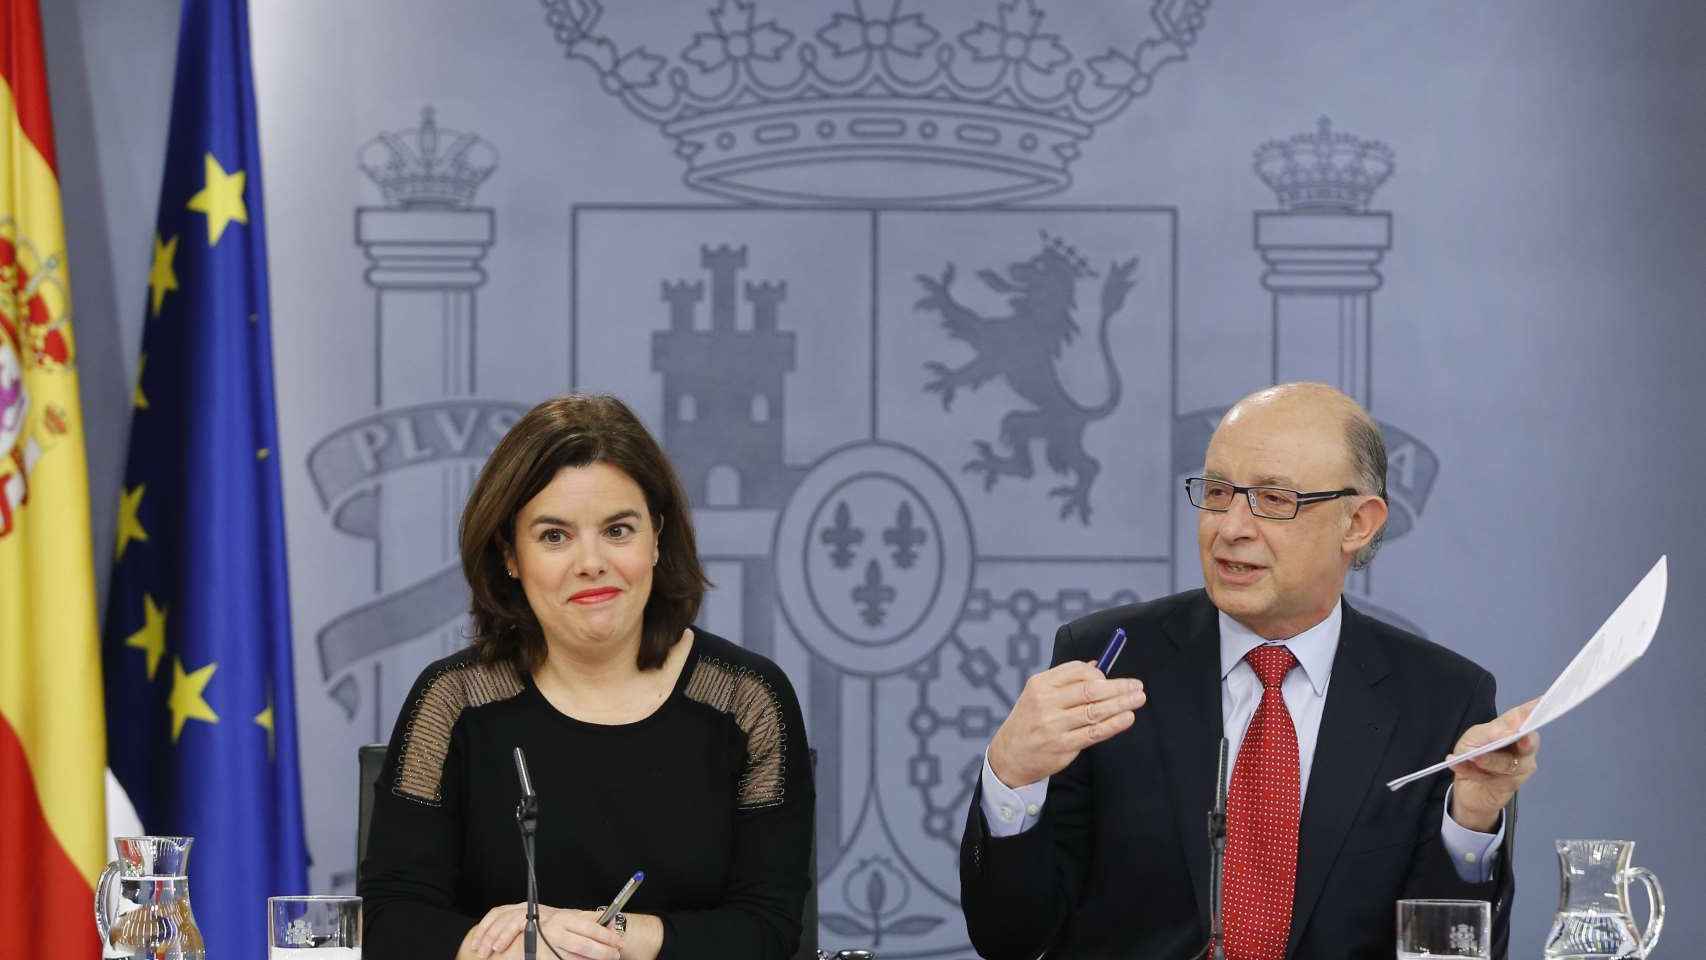 Cristóbal Montoro y Soraya Sáenz de Santamaría